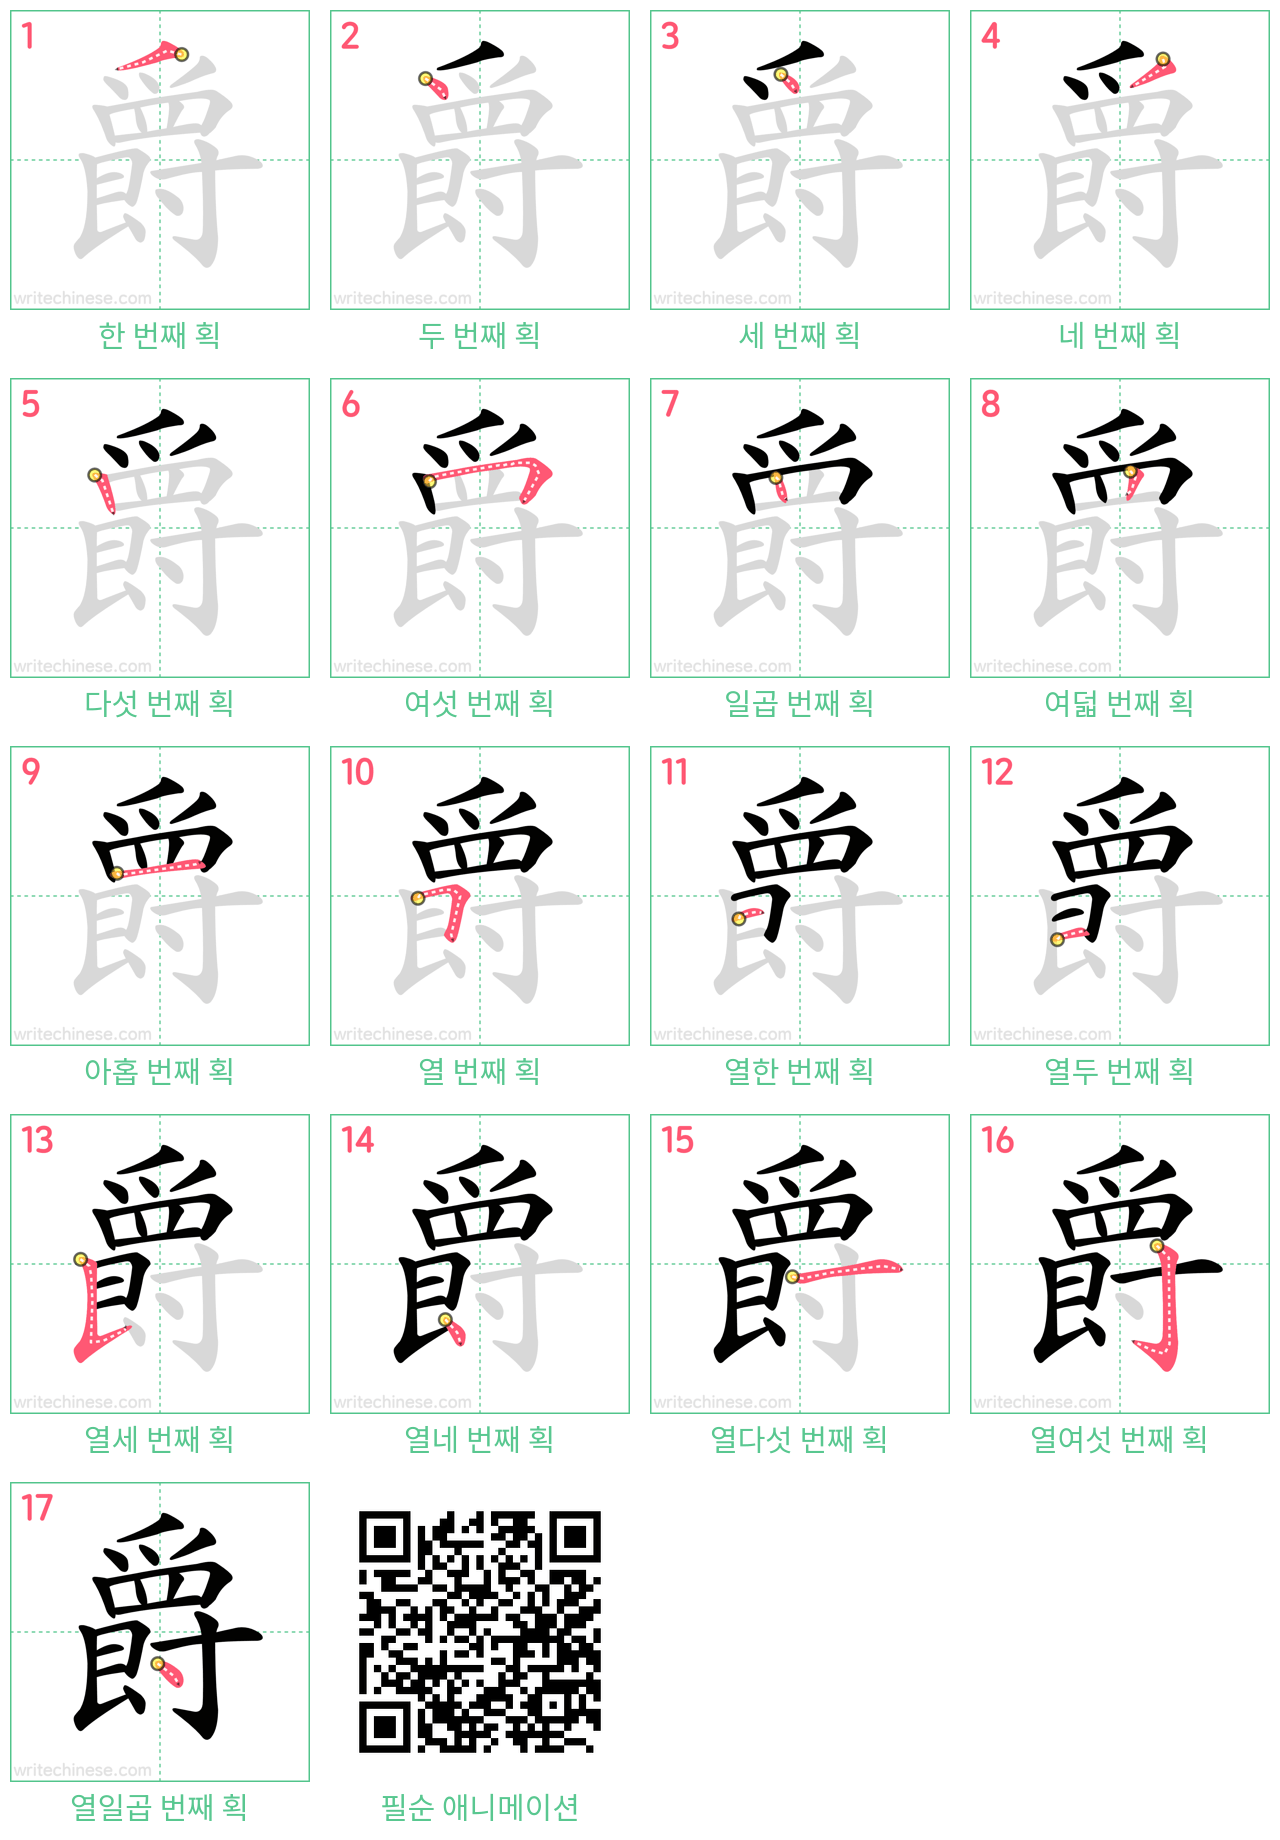 爵 step-by-step stroke order diagrams